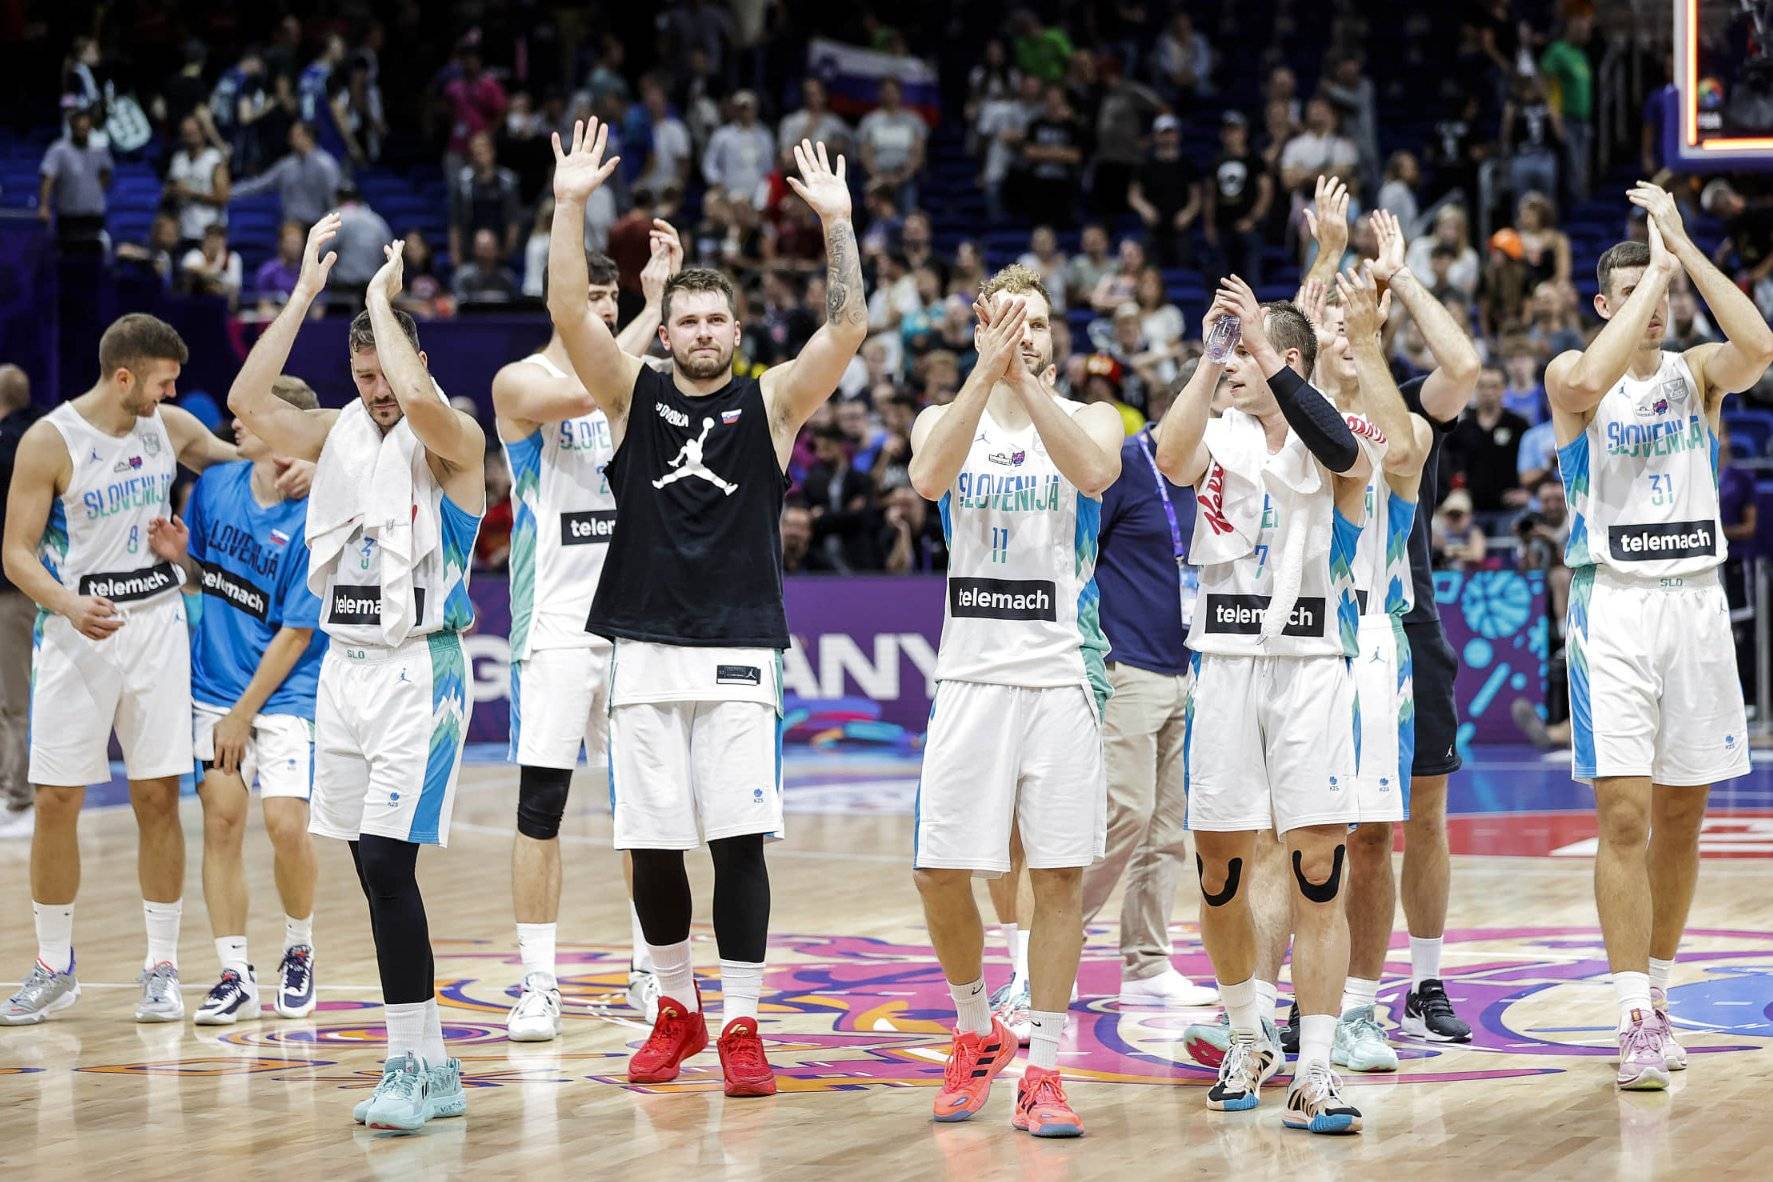 佐兰-德拉季奇股四头肌部分撕裂 将缺席欧洲篮球锦标赛剩余比赛